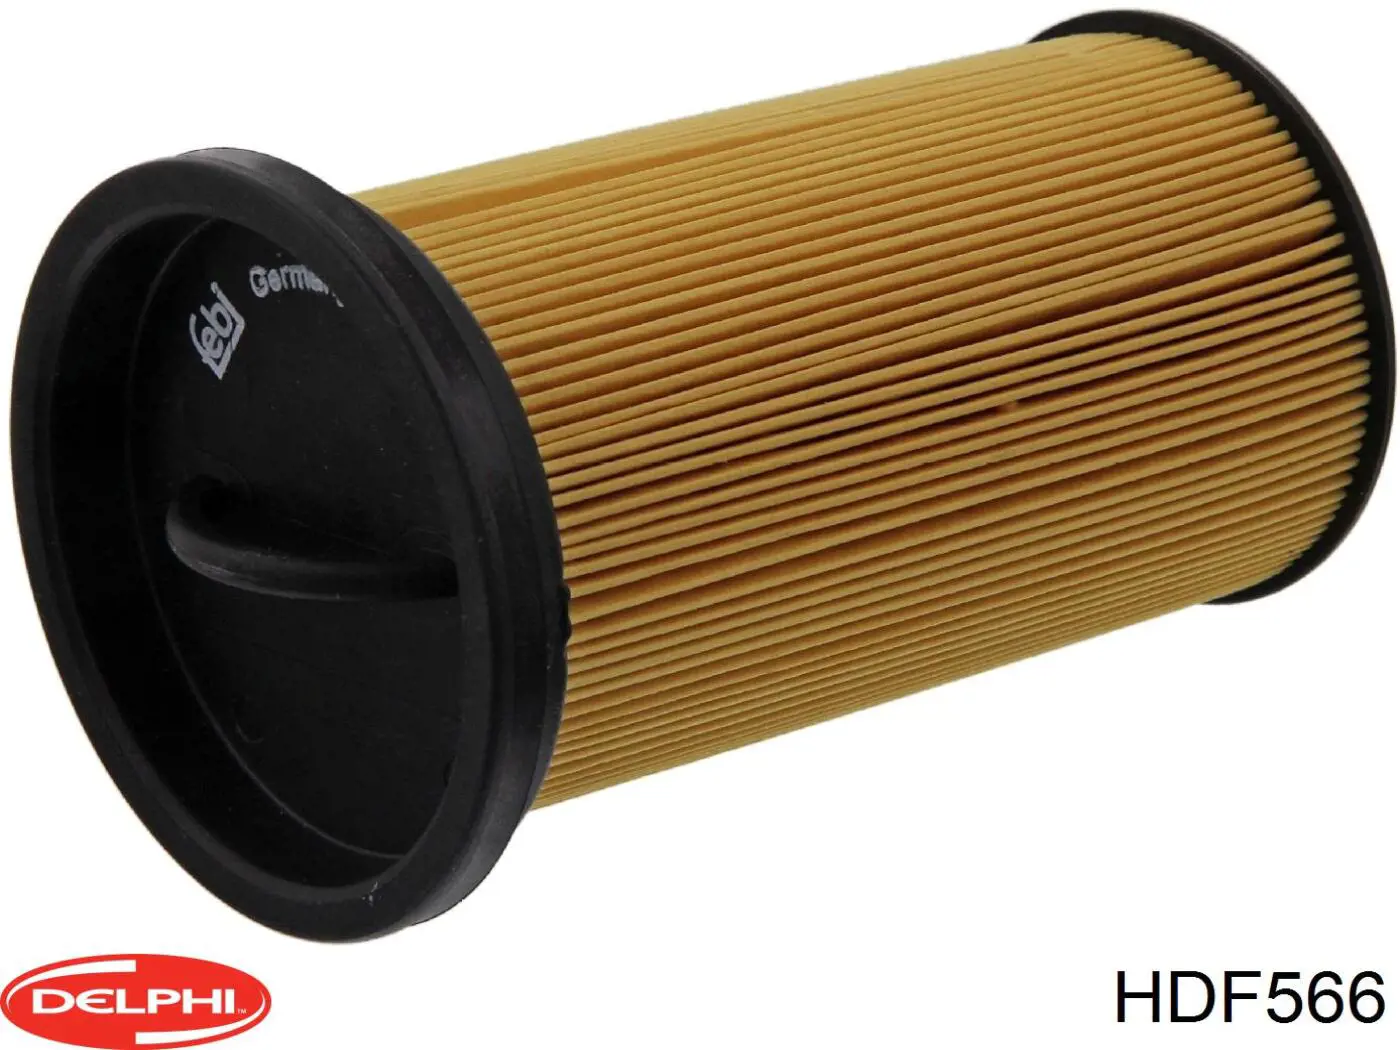 HDF566 Delphi filtro combustible